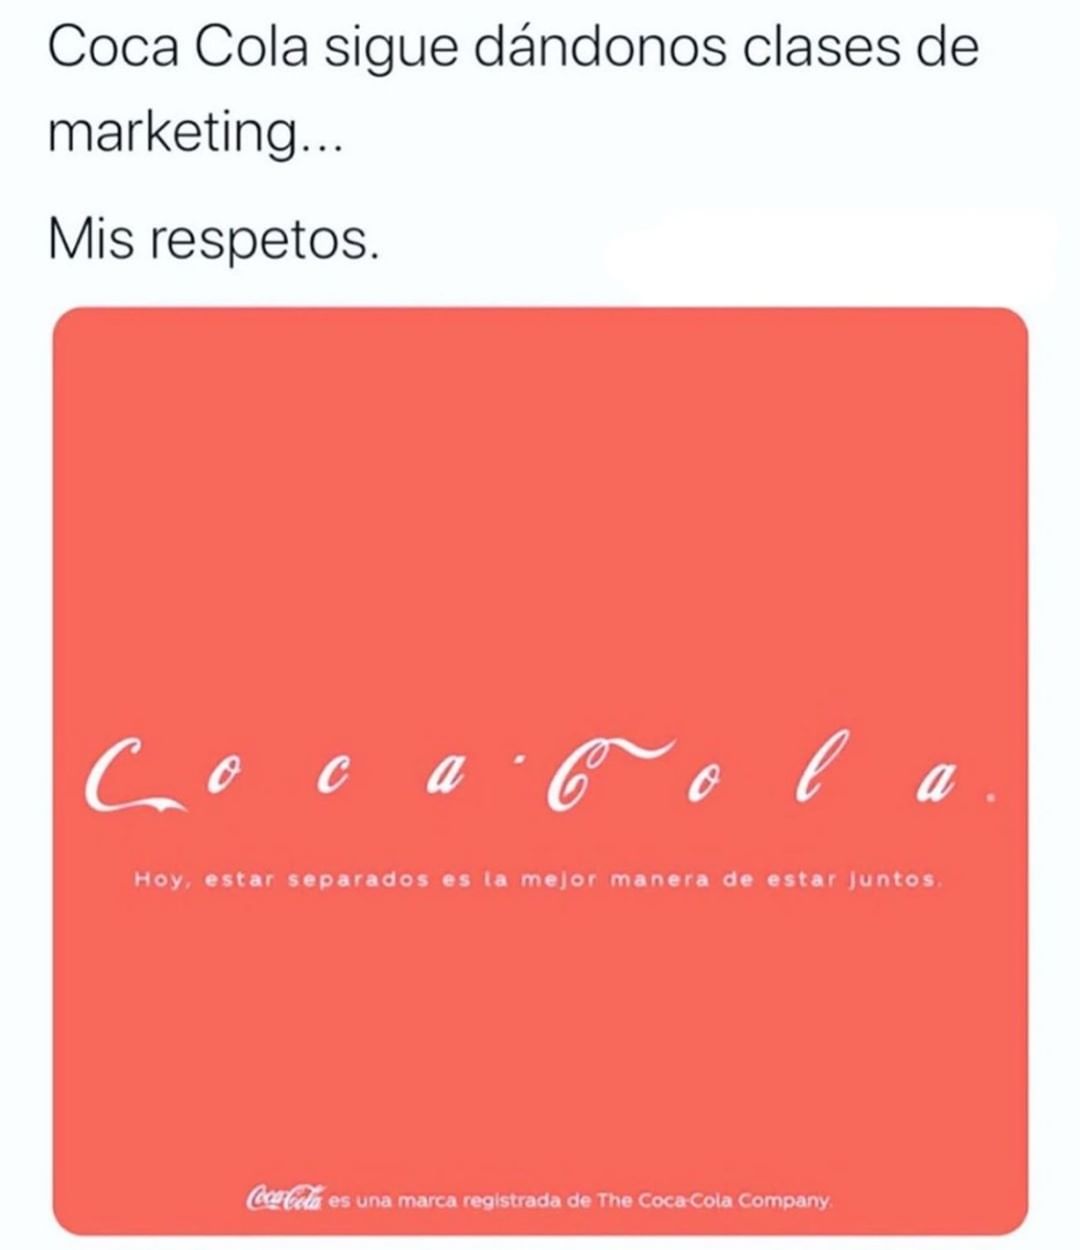 Coca Cola sigue dándonos clases de marketing...  Mis respetos.  Coca Cola. Hoy, estar separados es la mejor manera de estar juntos.